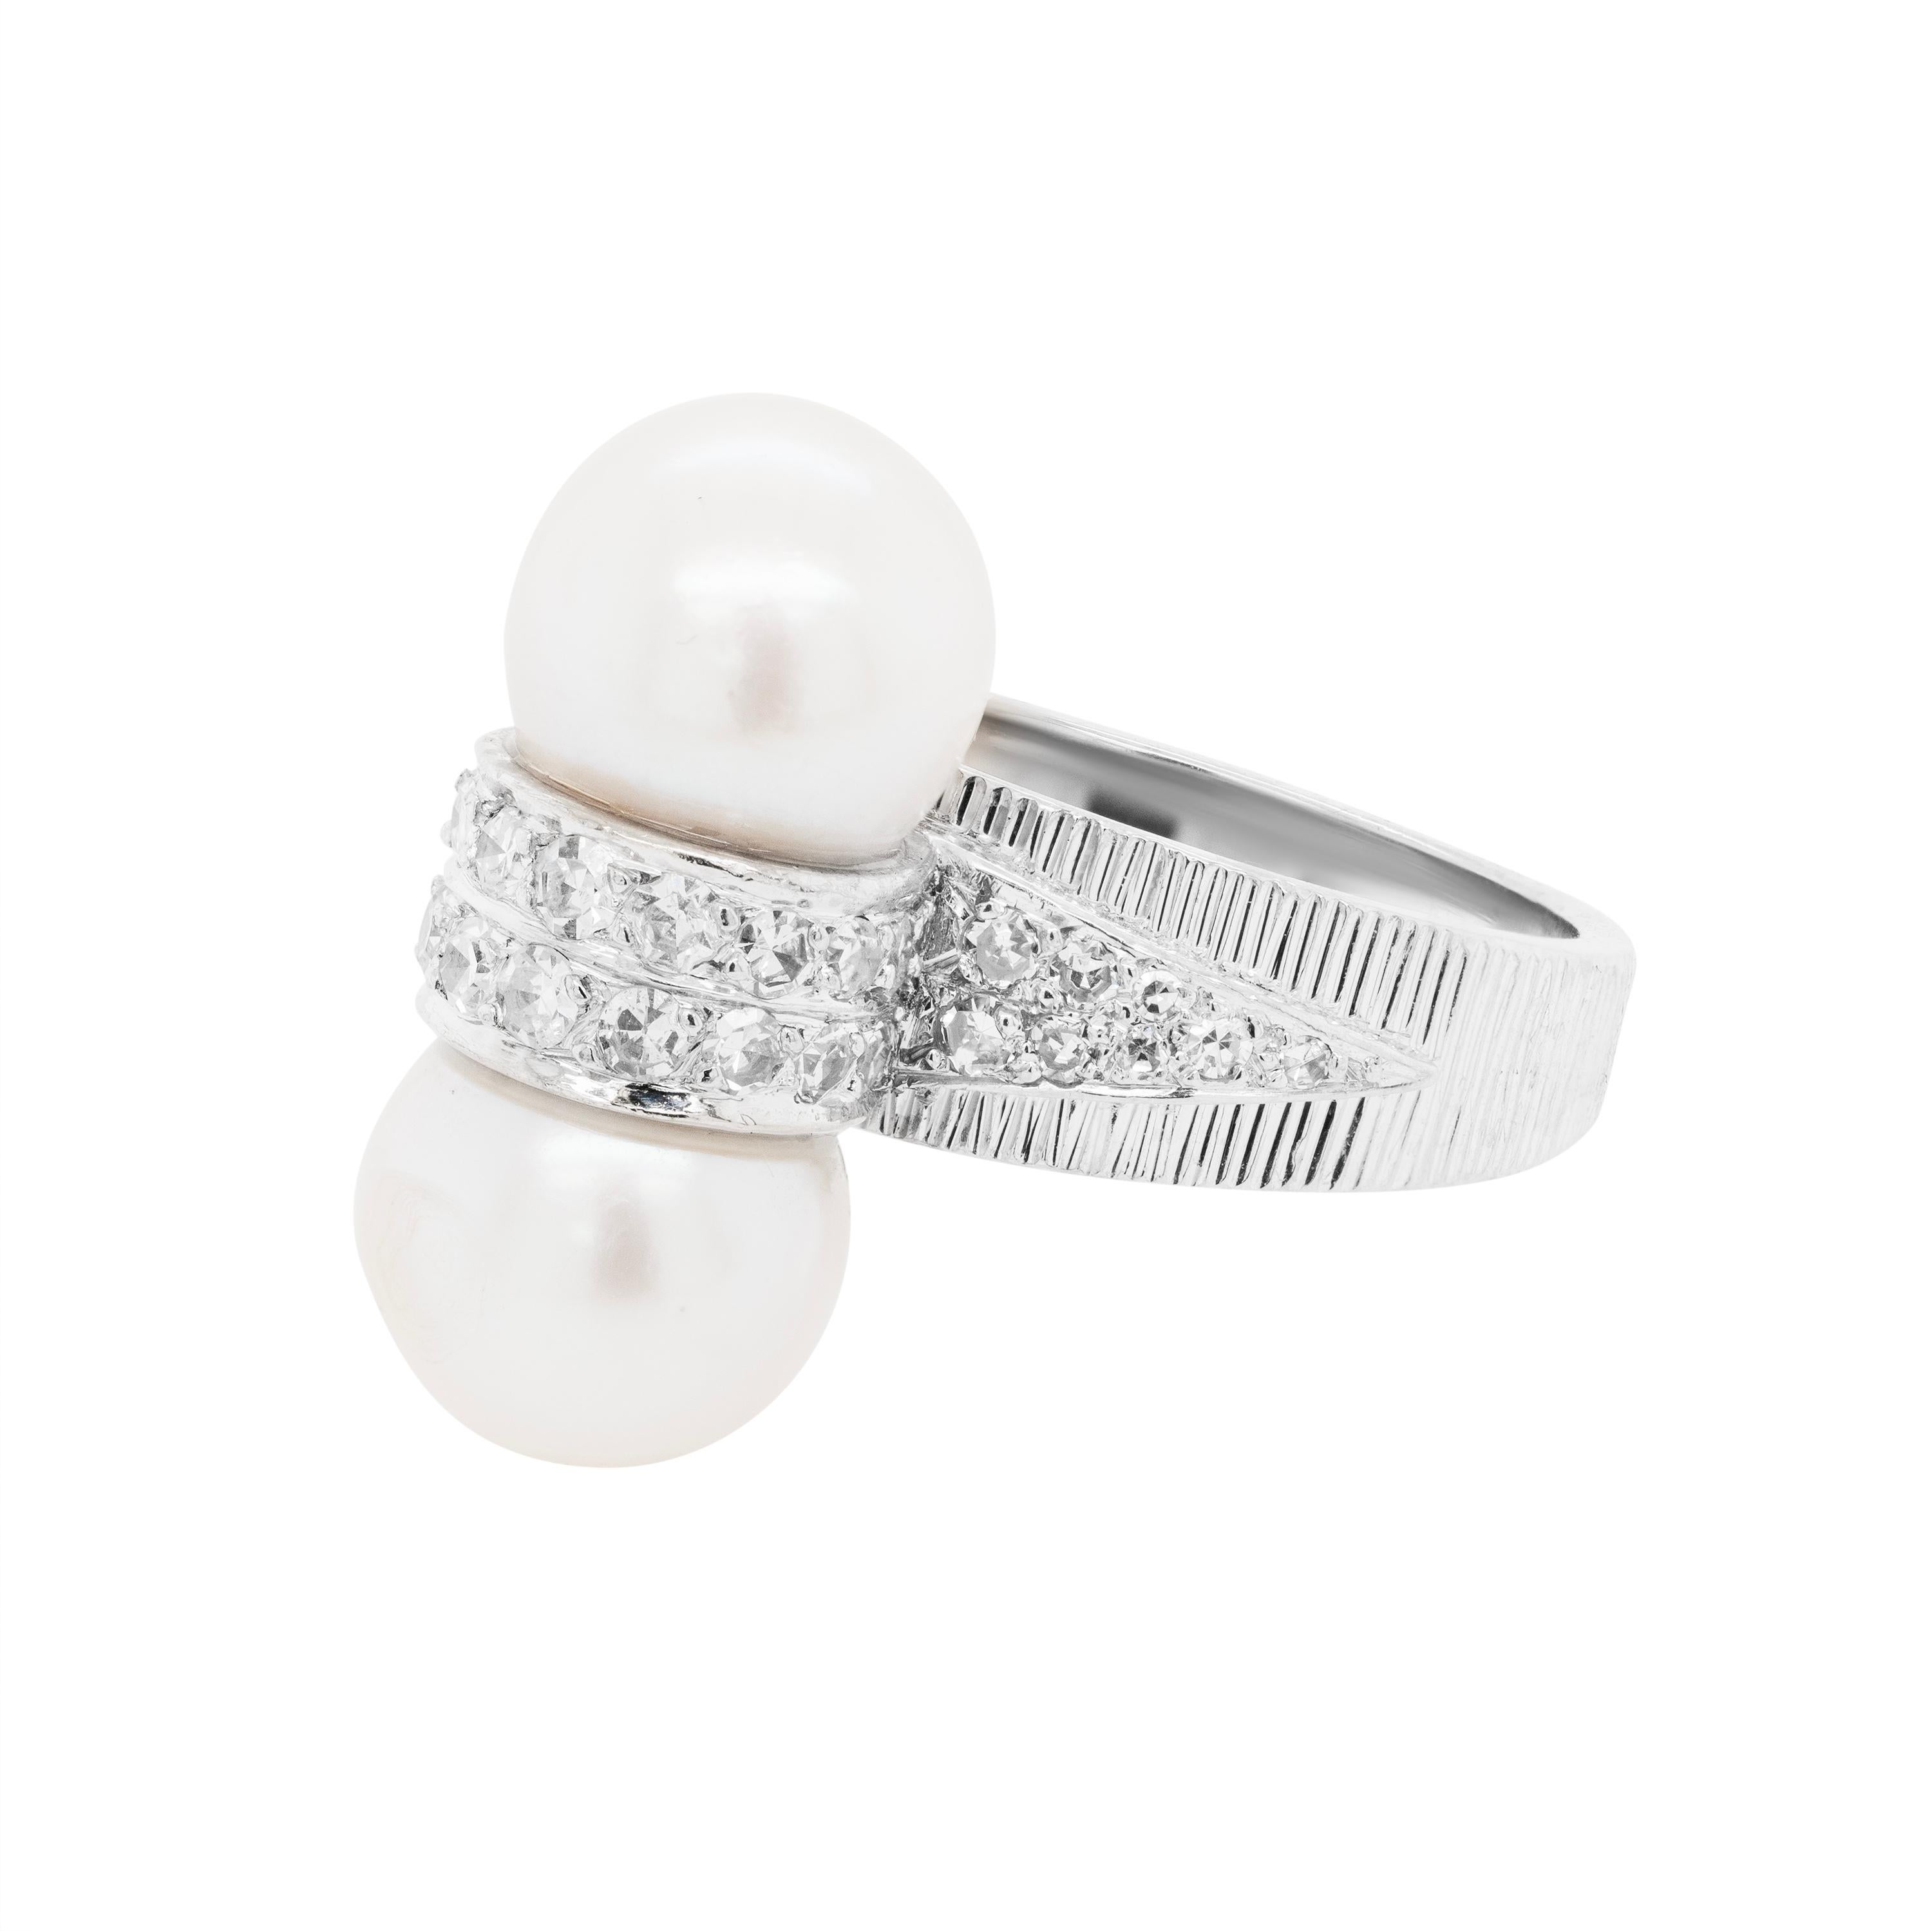 Dieser aus 18 Karat Weißgold gefertigte Vintage-Ring besticht durch sein Design, das die Eleganz von Perlen mit dem Glanz von Diamanten verbindet. Zwei Zuchtperlen schmücken diesen eleganten Ring. Sie messen jeweils ca. 9 mm und sind über und unter